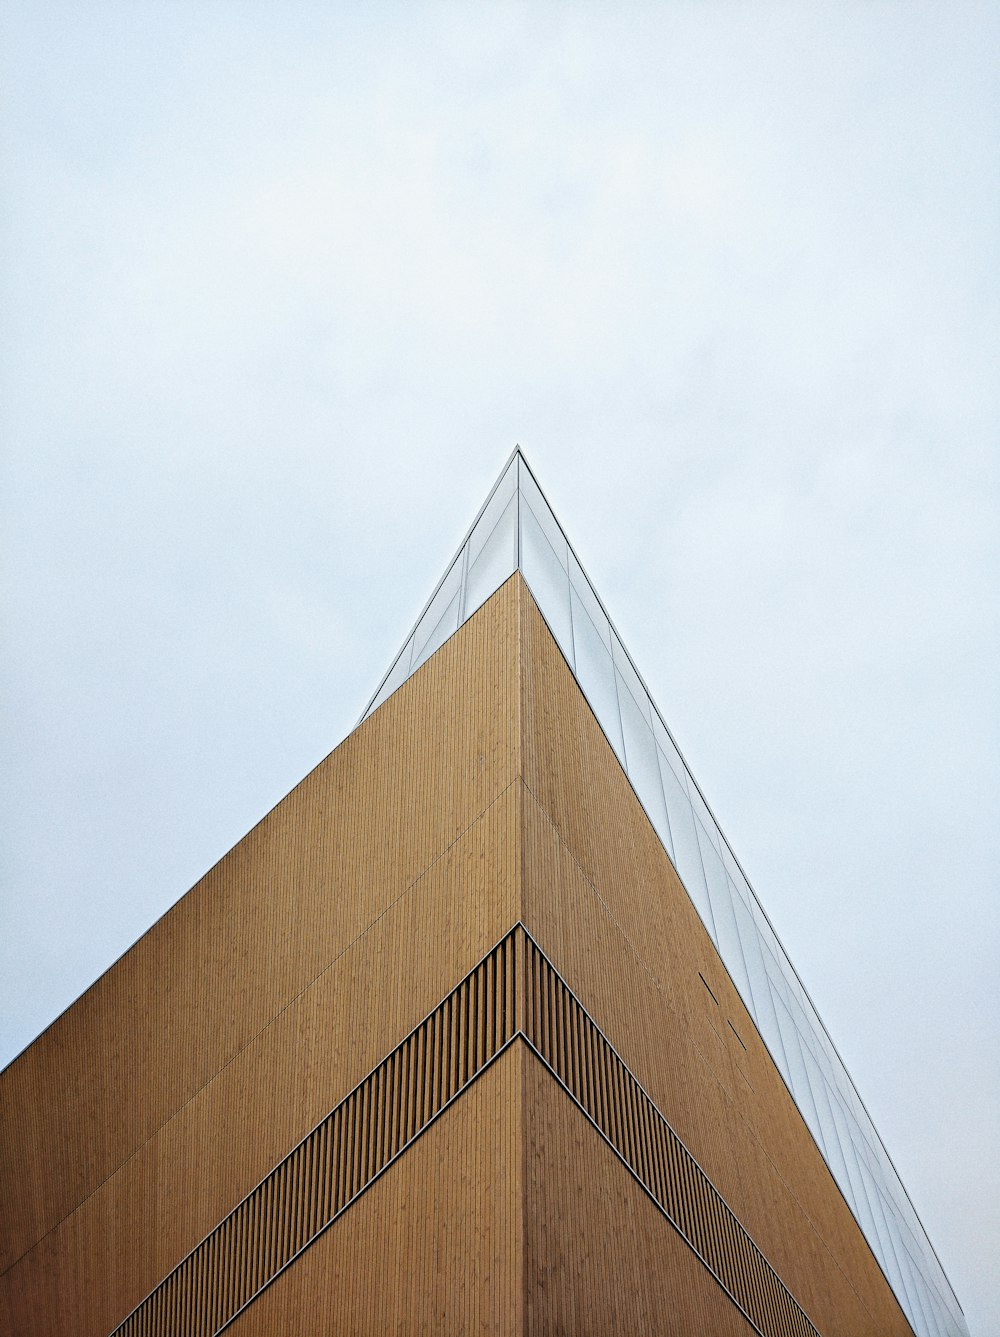 Foto von der Spitze des Gebäudes aus einem niedrigen Winkel